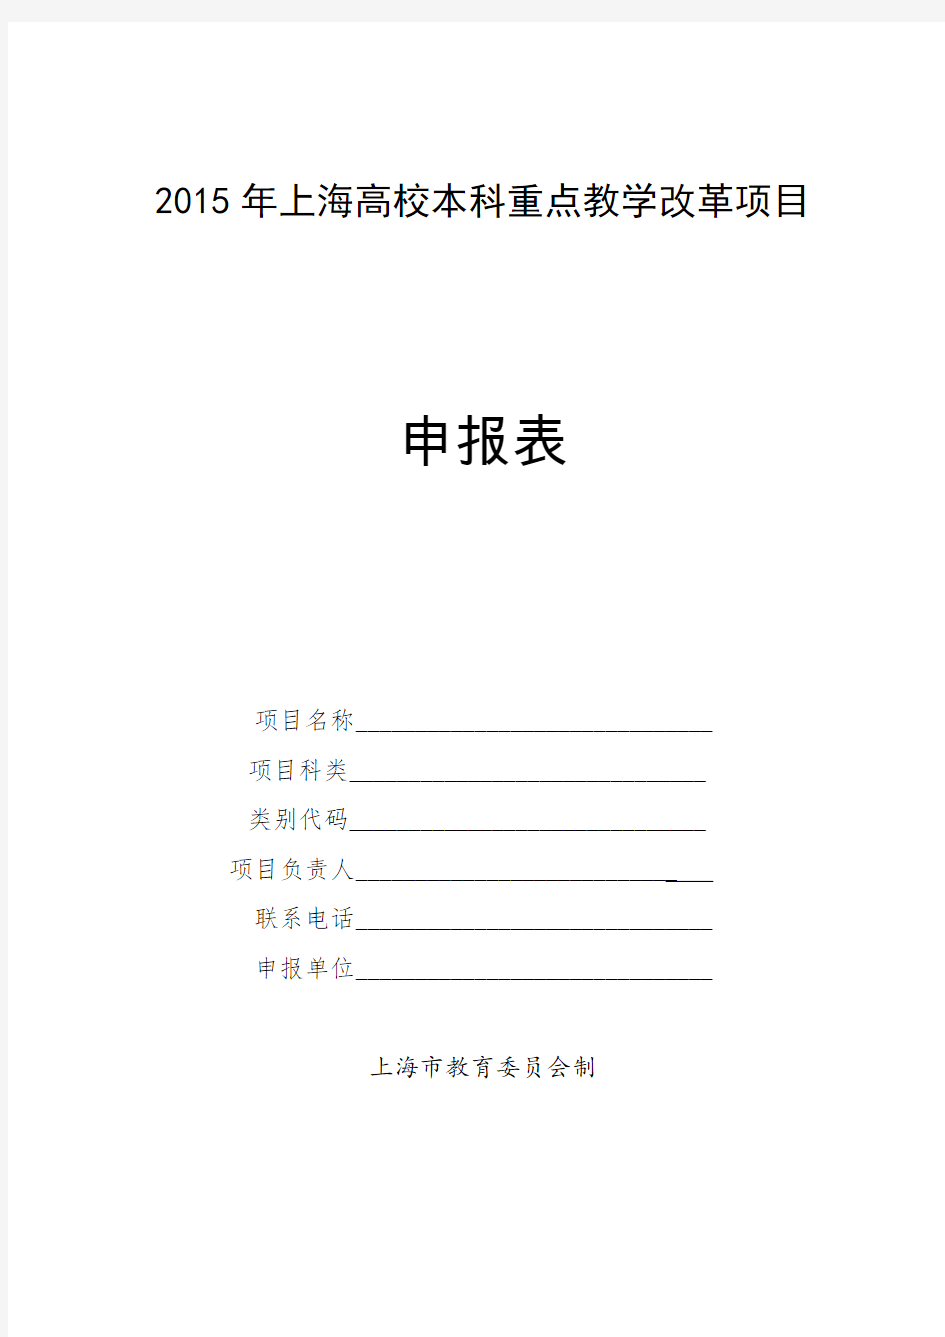 2015年上海高校本科重点教学改革项目